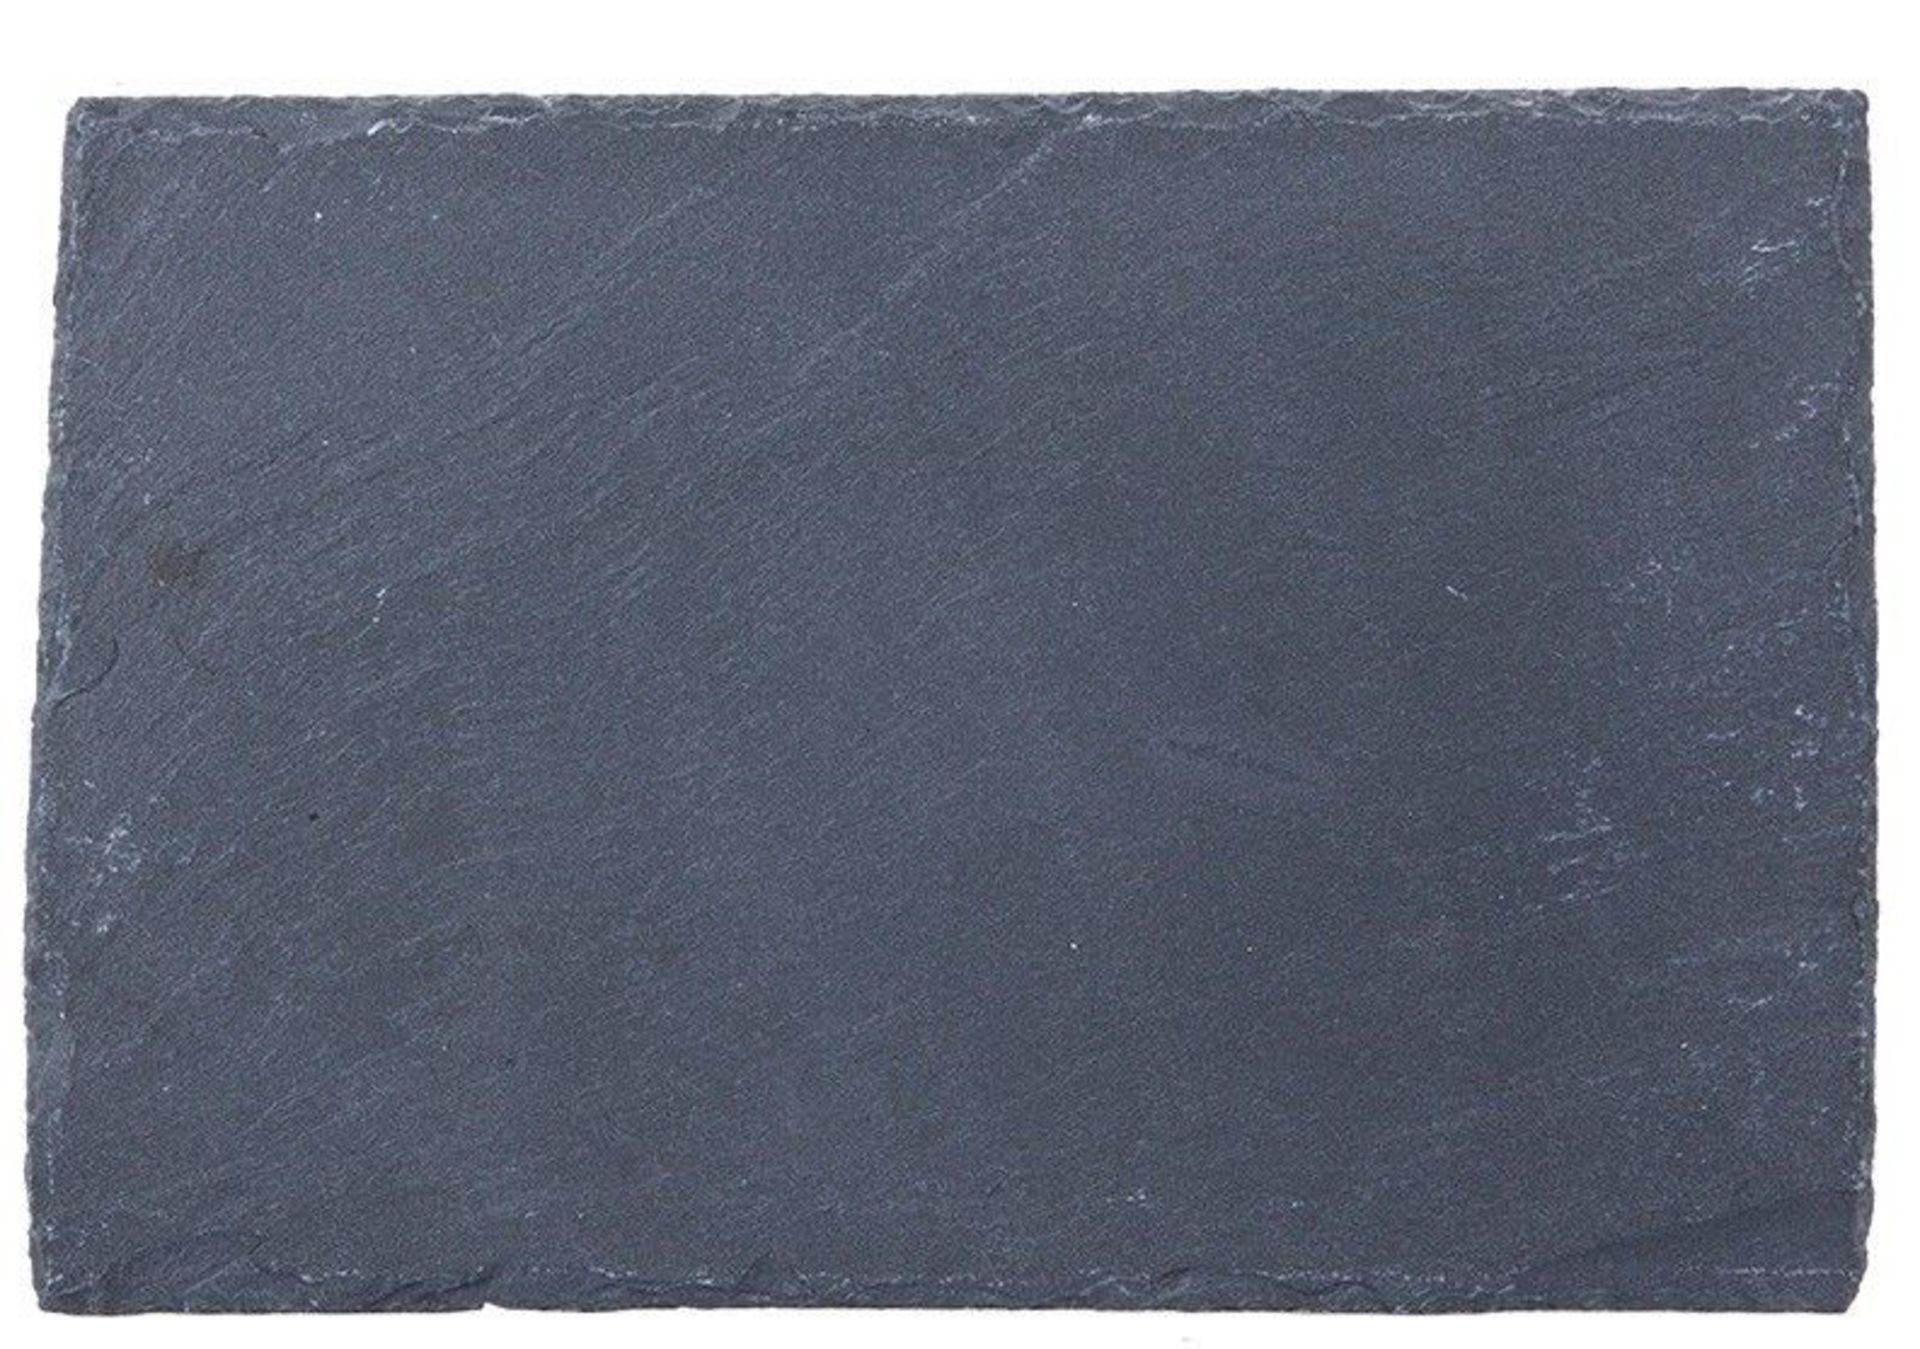 + VAT Brand New Slate 30 x 20cm Tapas Serving Board With Non-Slip Feet ISP £10.78 (ebay)